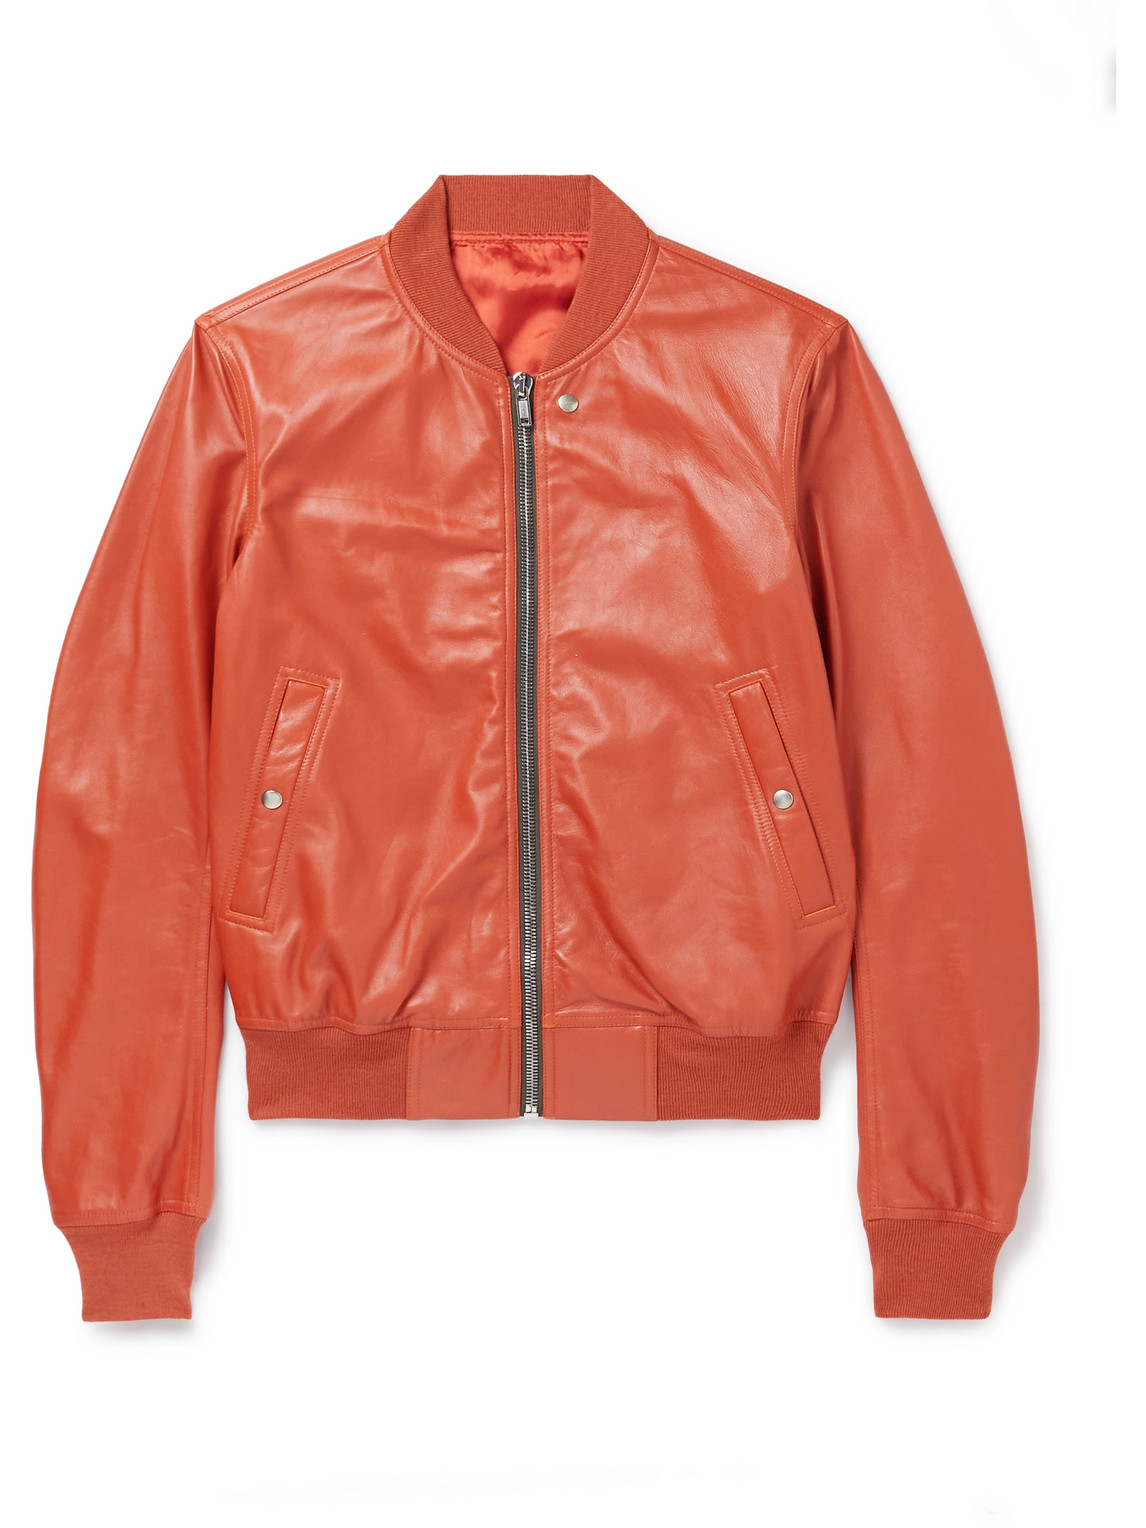 Rick Owens - Leather Bomber Jacket - Men - Orange - IT 48 pour hommes